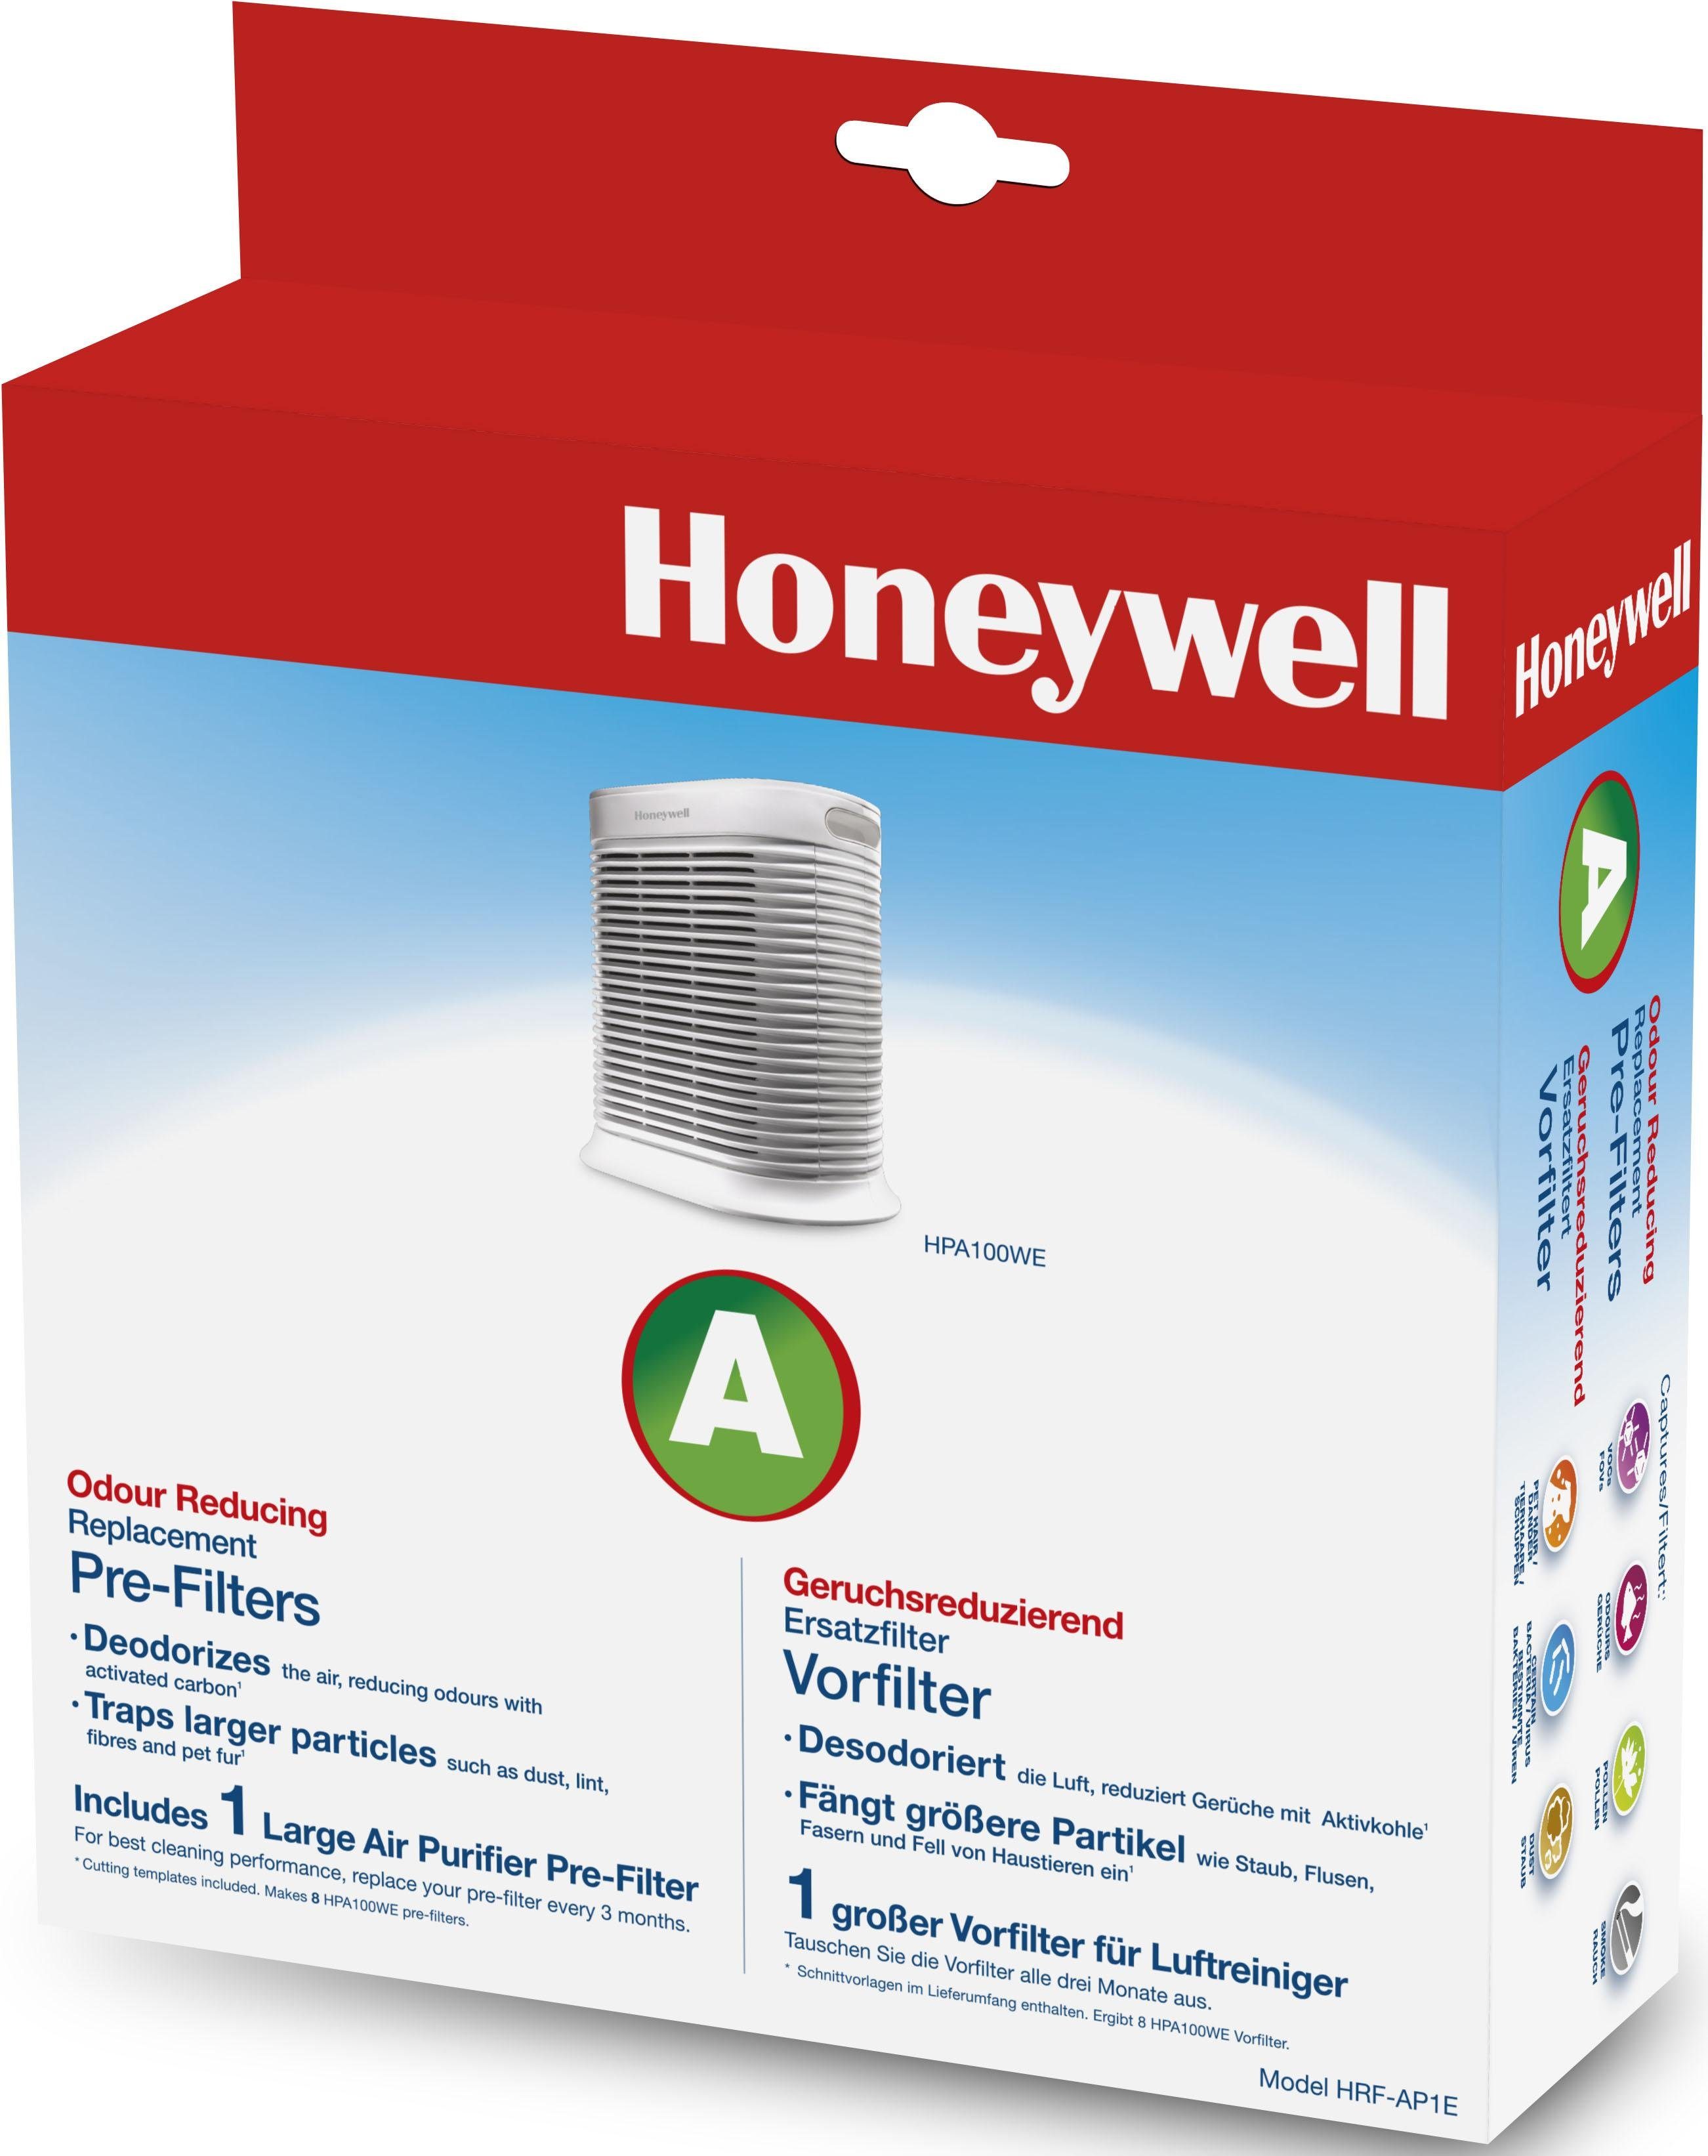 Honeywell Staubfilter HRF-AP1E, Zubehör für Honeywell Luftreiniger HPA100WE, geruchsreduzierend